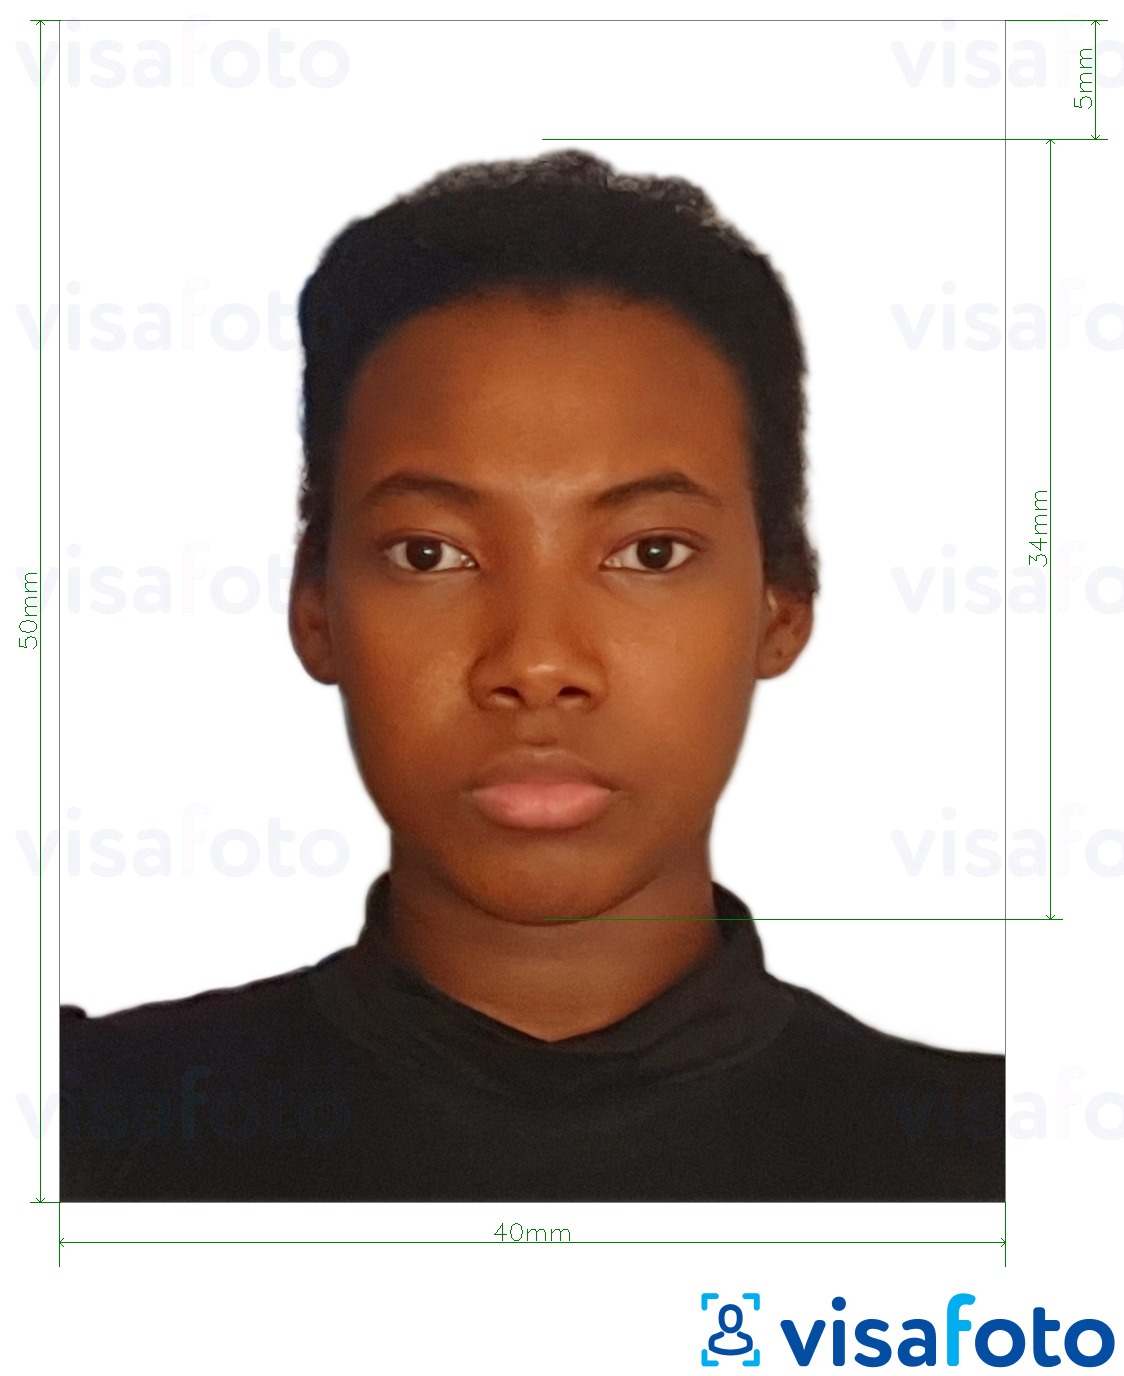 Exemplo de foto para Passaporte dos Camarões 4x5 cm (40x50 mm) com especificação exata de dimensão